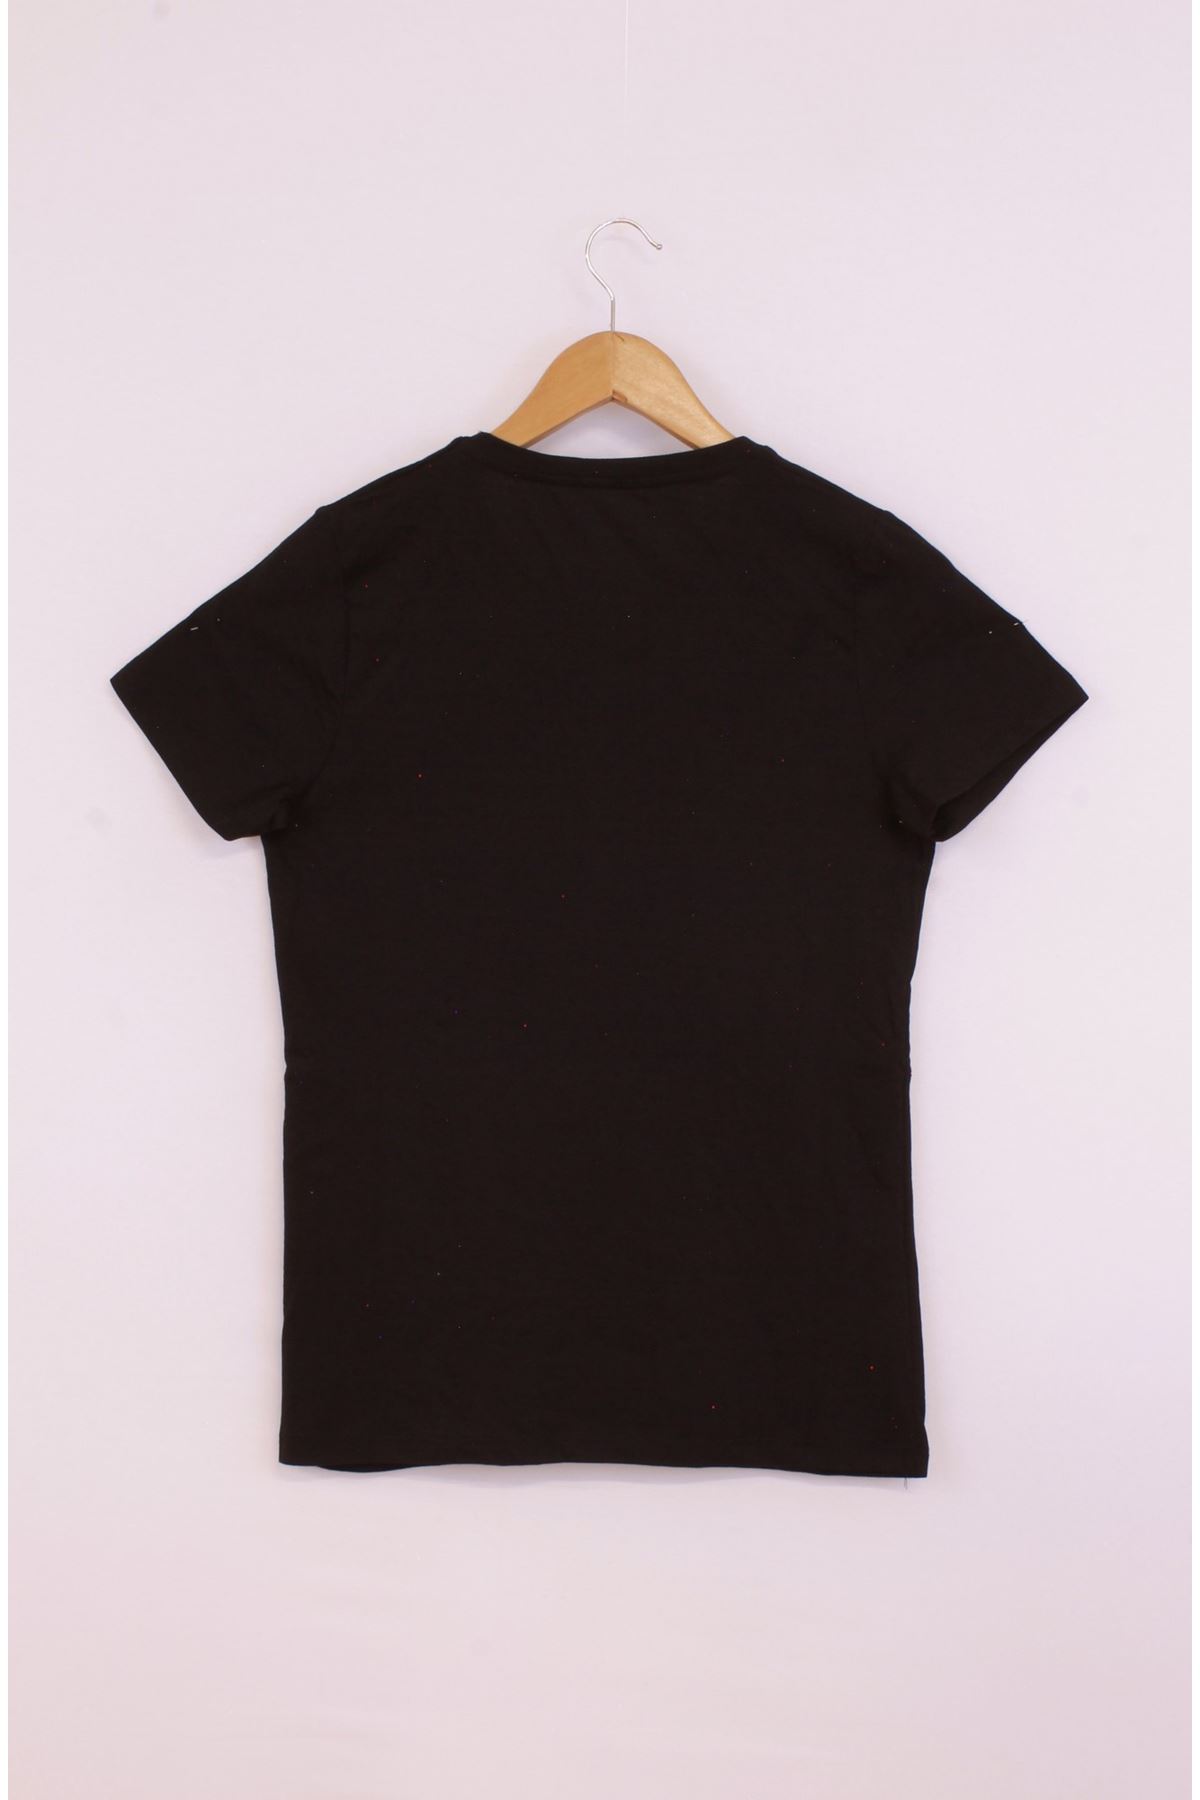 Giyinsen Kadın Siyah Tişört - 23YL71595014